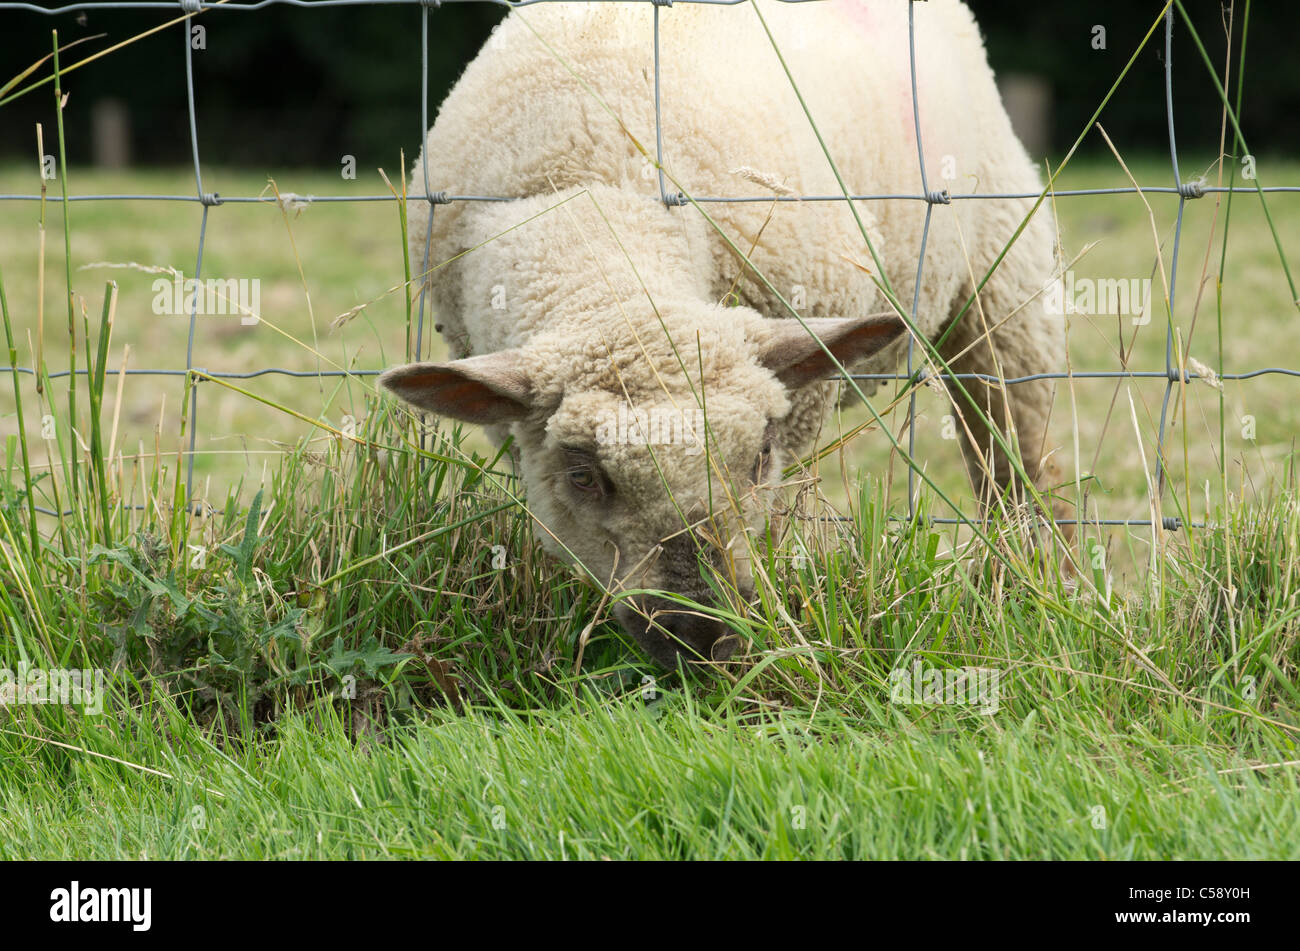 Un cordero comiendo hierba de alimentación a través de una valla de alambre Foto de stock